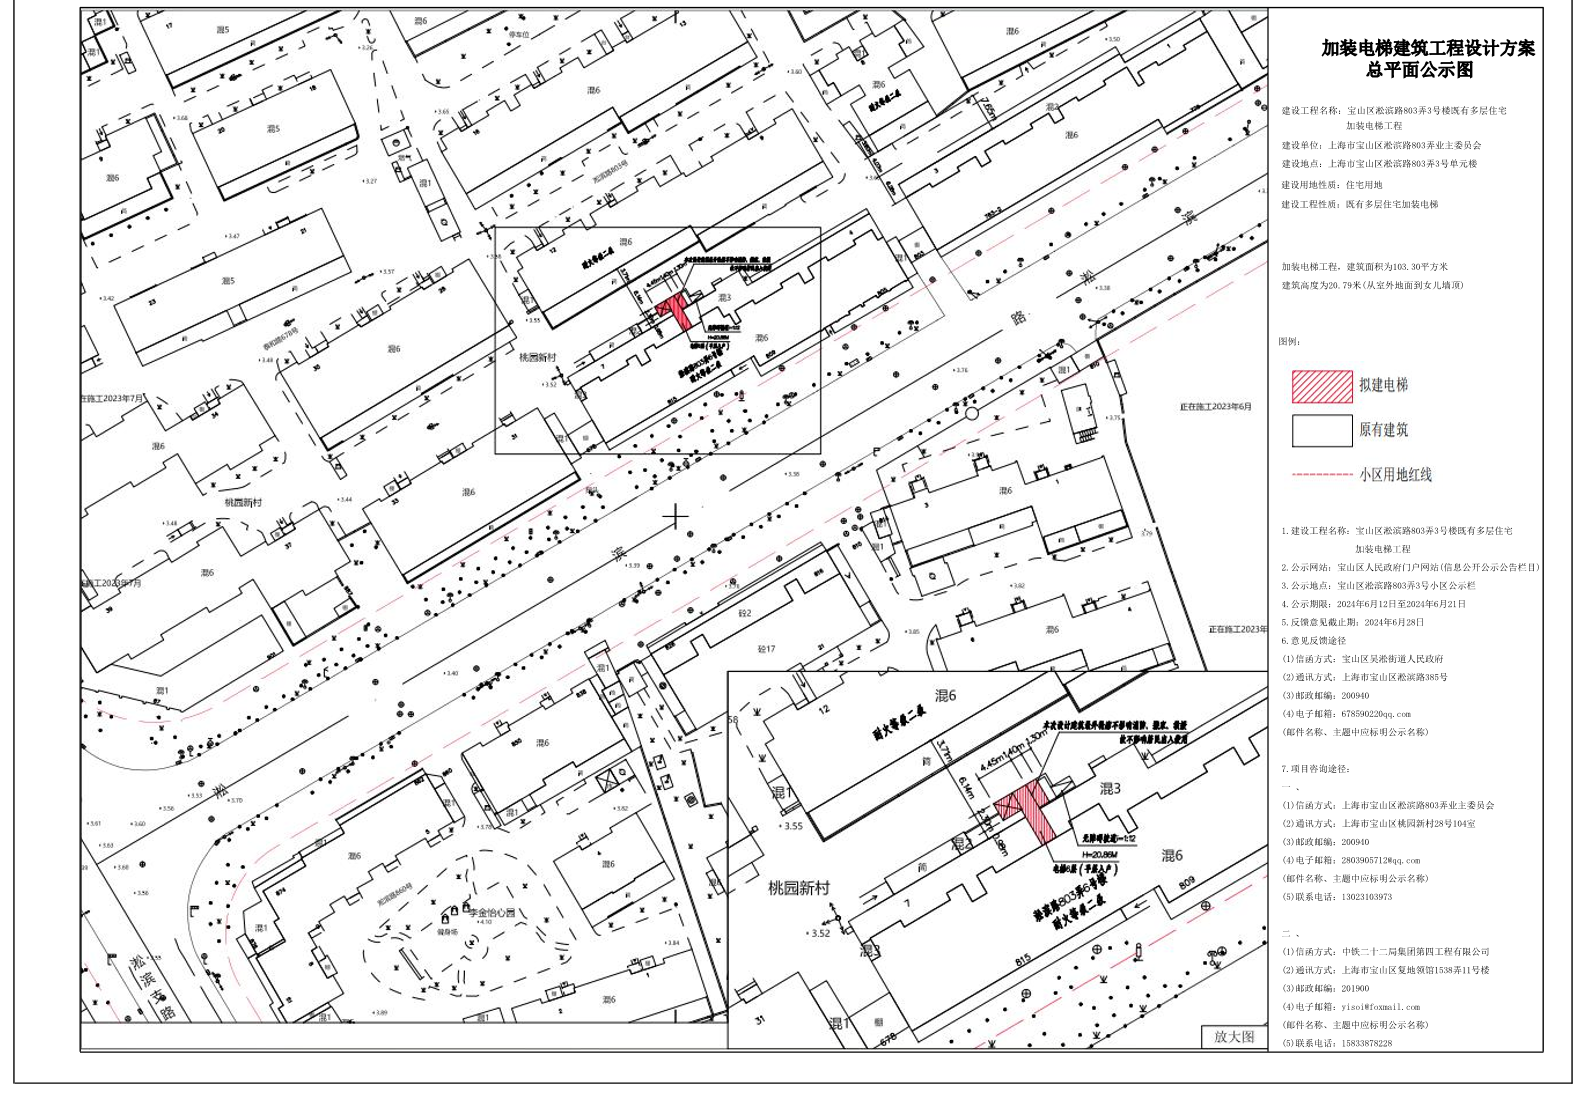 宝山区淞滨路803弄3号楼加装电梯项目公示图.pdf